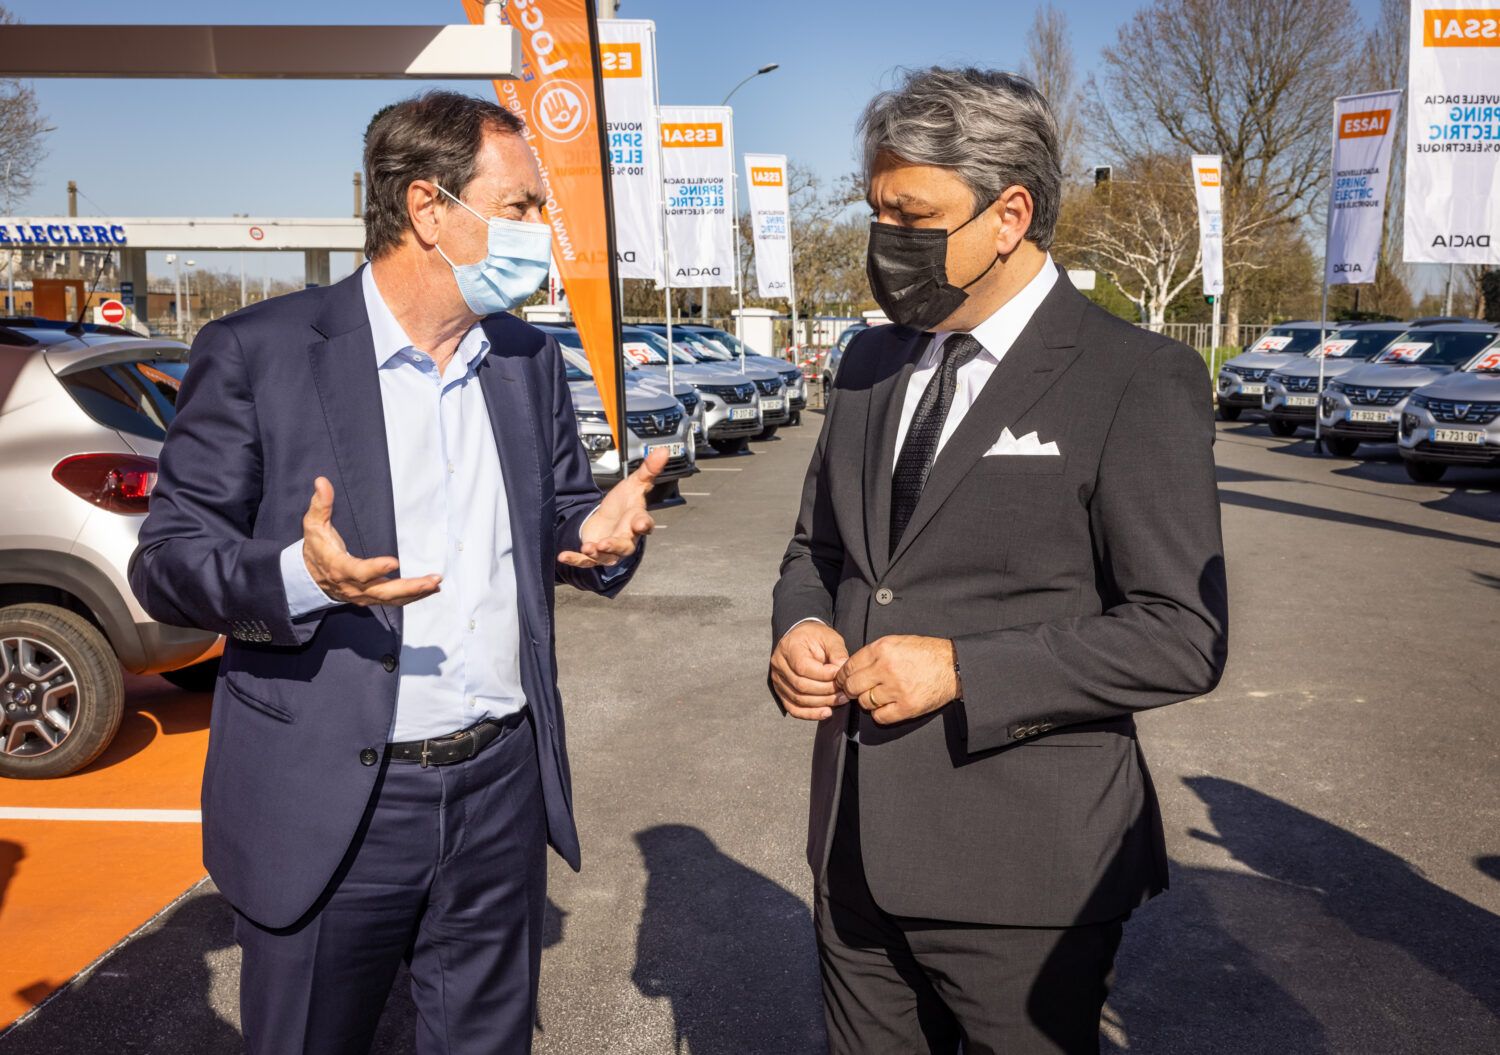 2021 - E.Leclerc Location accueille dans ses agences les premières Dacia Spring, 100% électriques